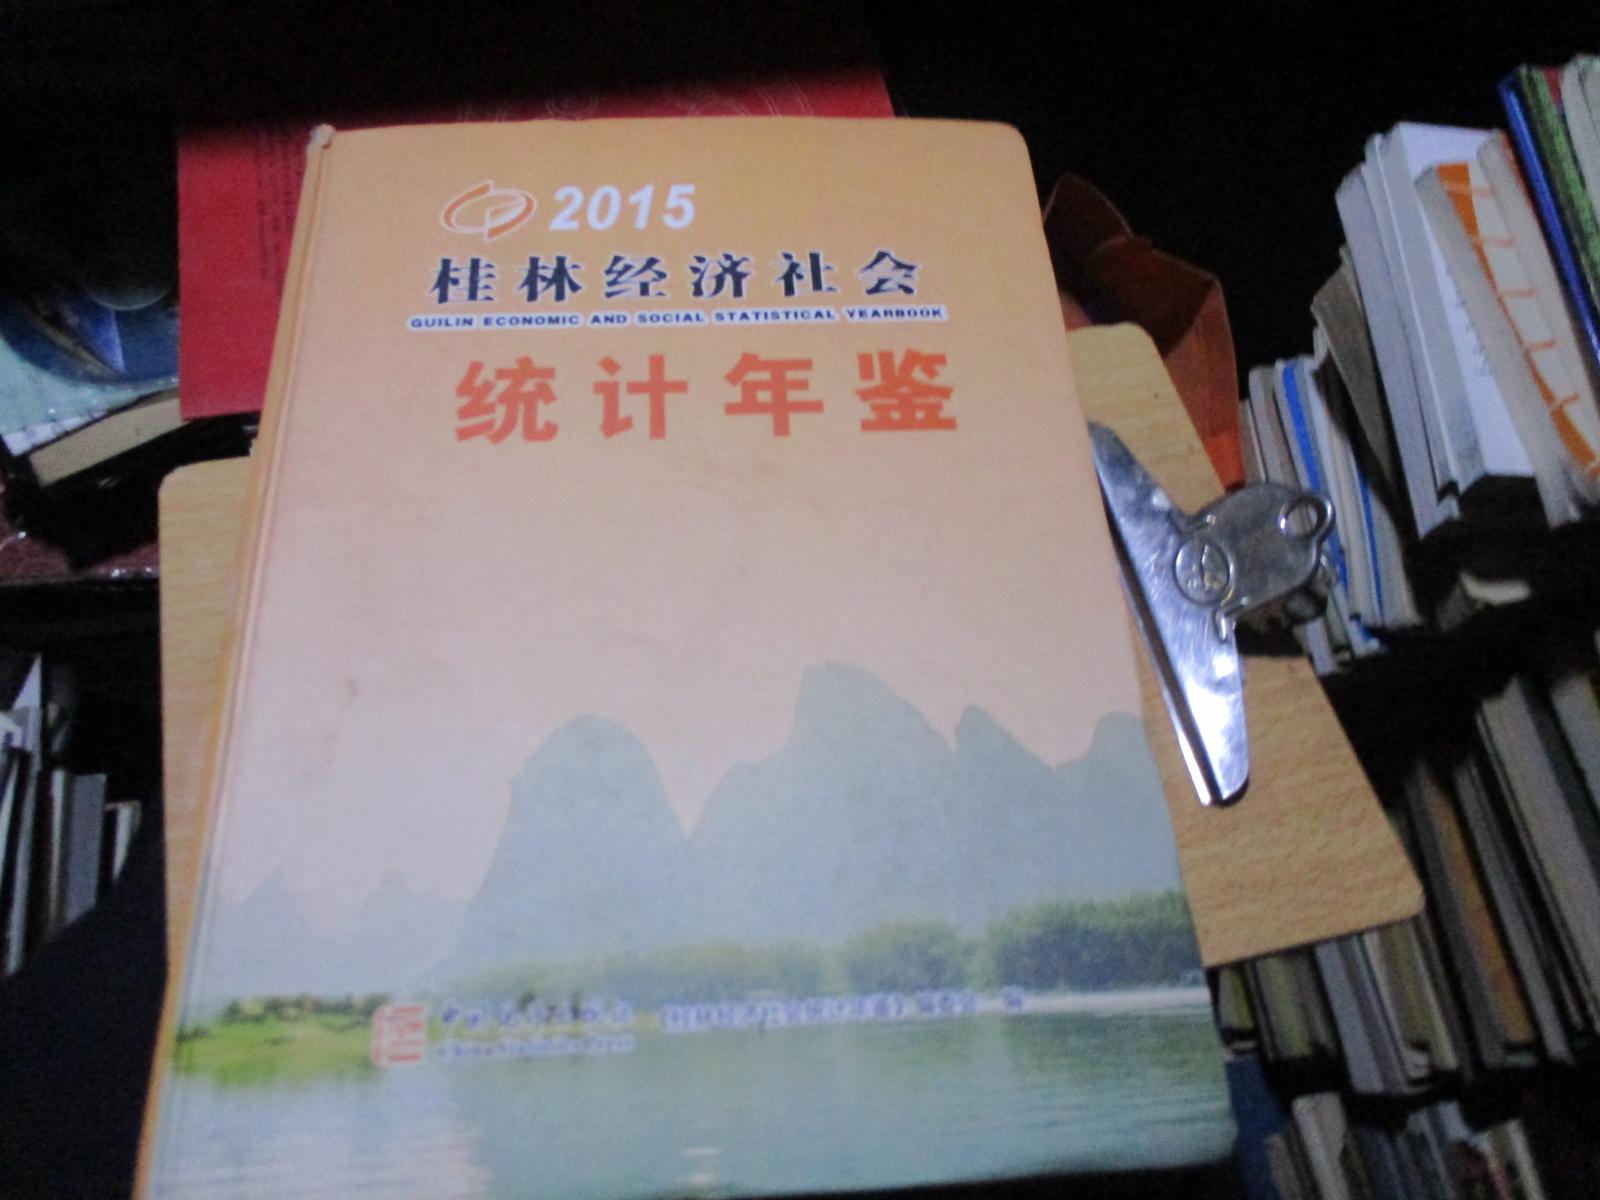 桂林经济社会统计年鉴 2015